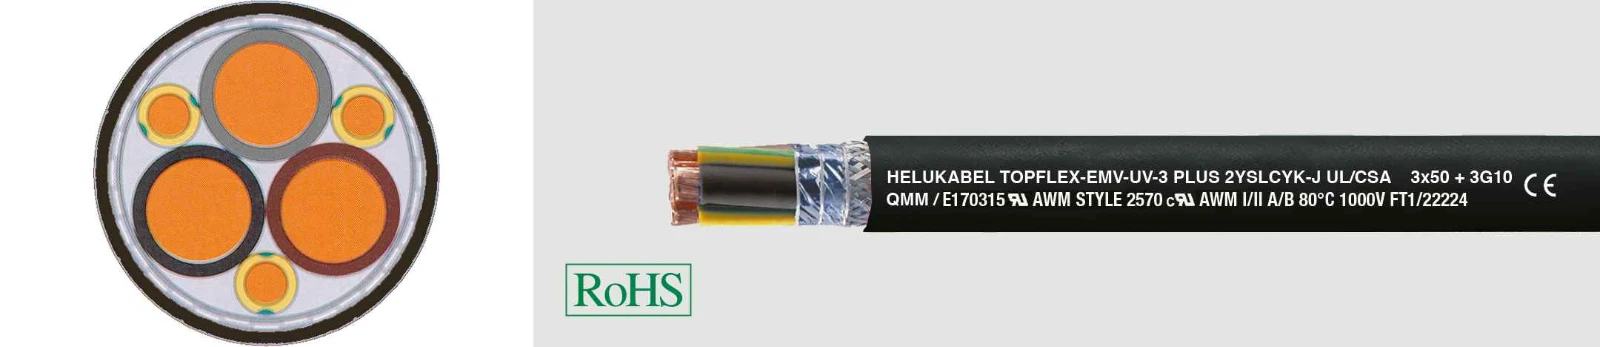 Helukabel Voedingskabel >= 1 kV, voor vaste aanleg TOPFLEX®-EMV-UV 2YSLCYK-J UL/CSA